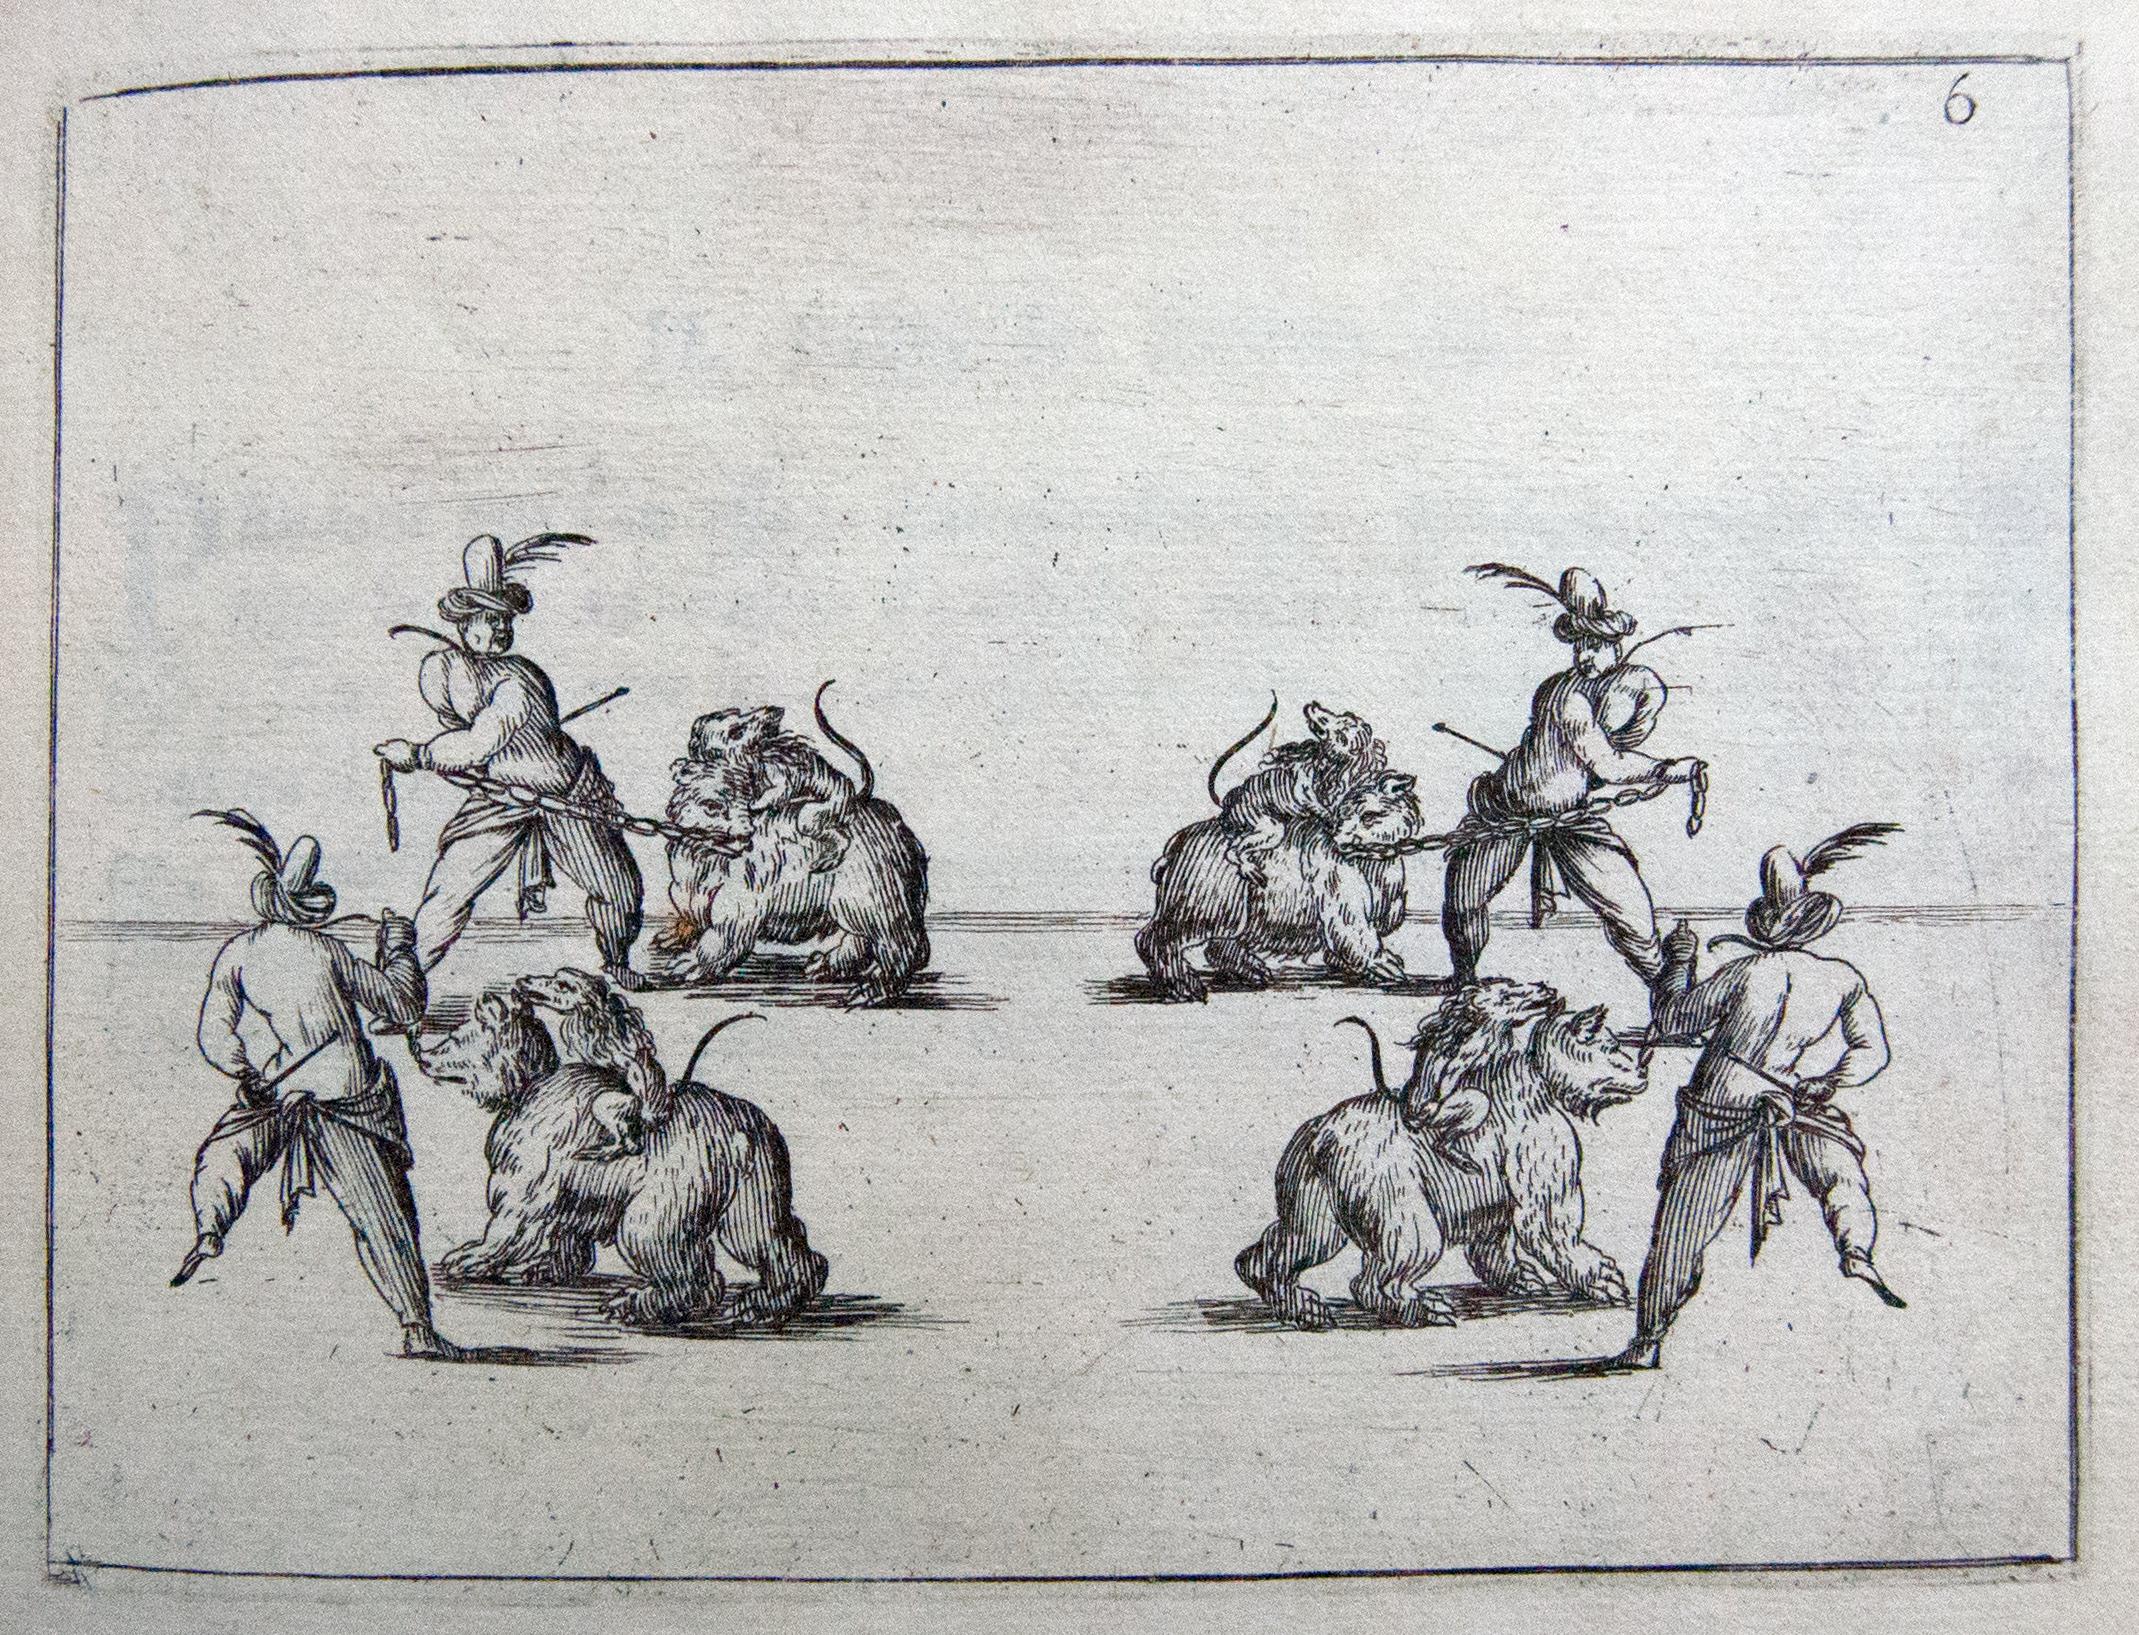 Valerio Sspada, Ballet del Intermedio de La finta pazza, Osos y monos. 1645-46 British Museum